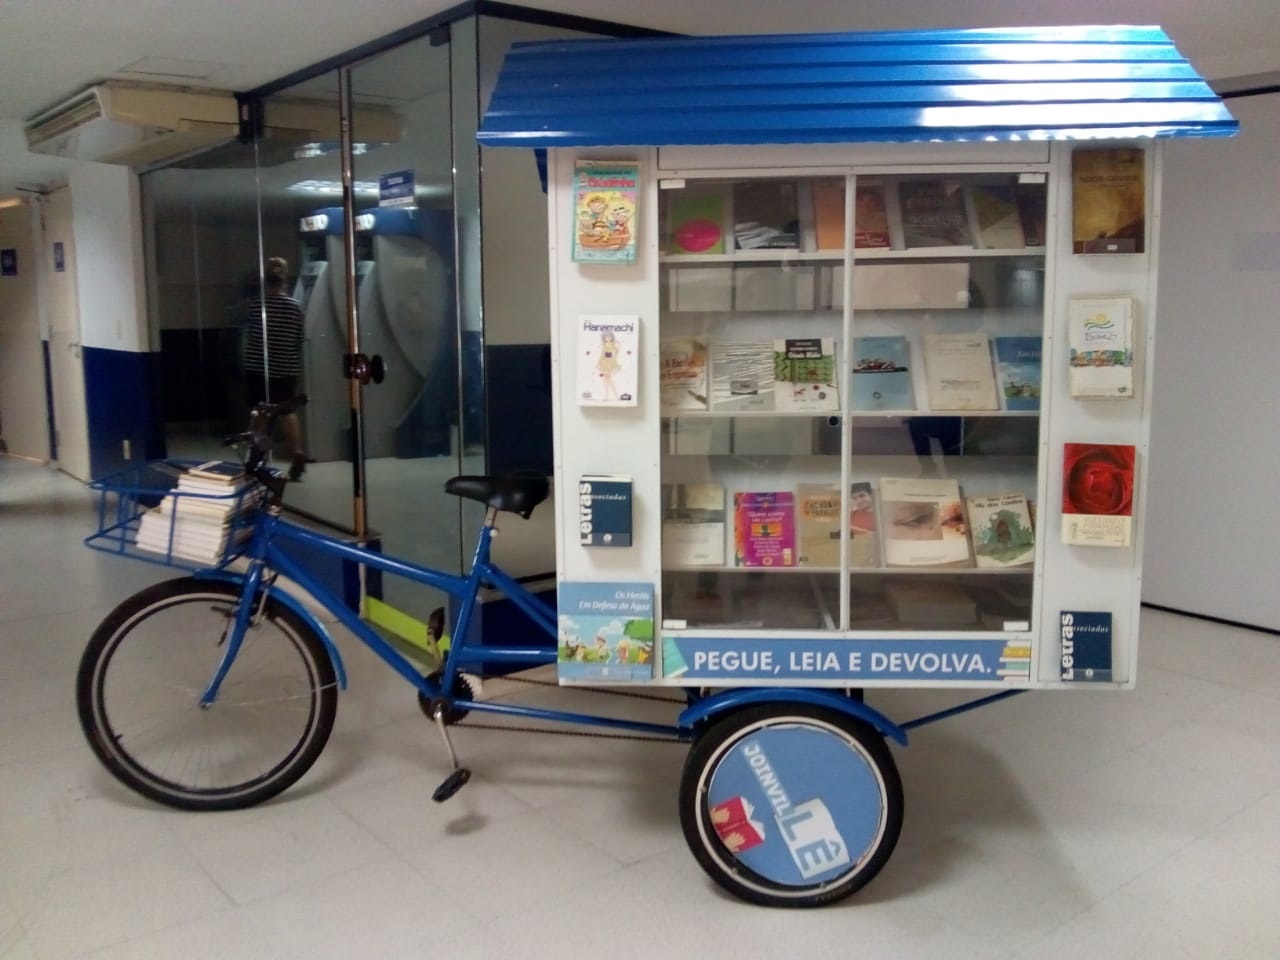 Biblioteca itinerante ficará no Hospital São José até fevereiro de 2020 | Foto: Divulgação/Secom/Prefeitura de Joinville